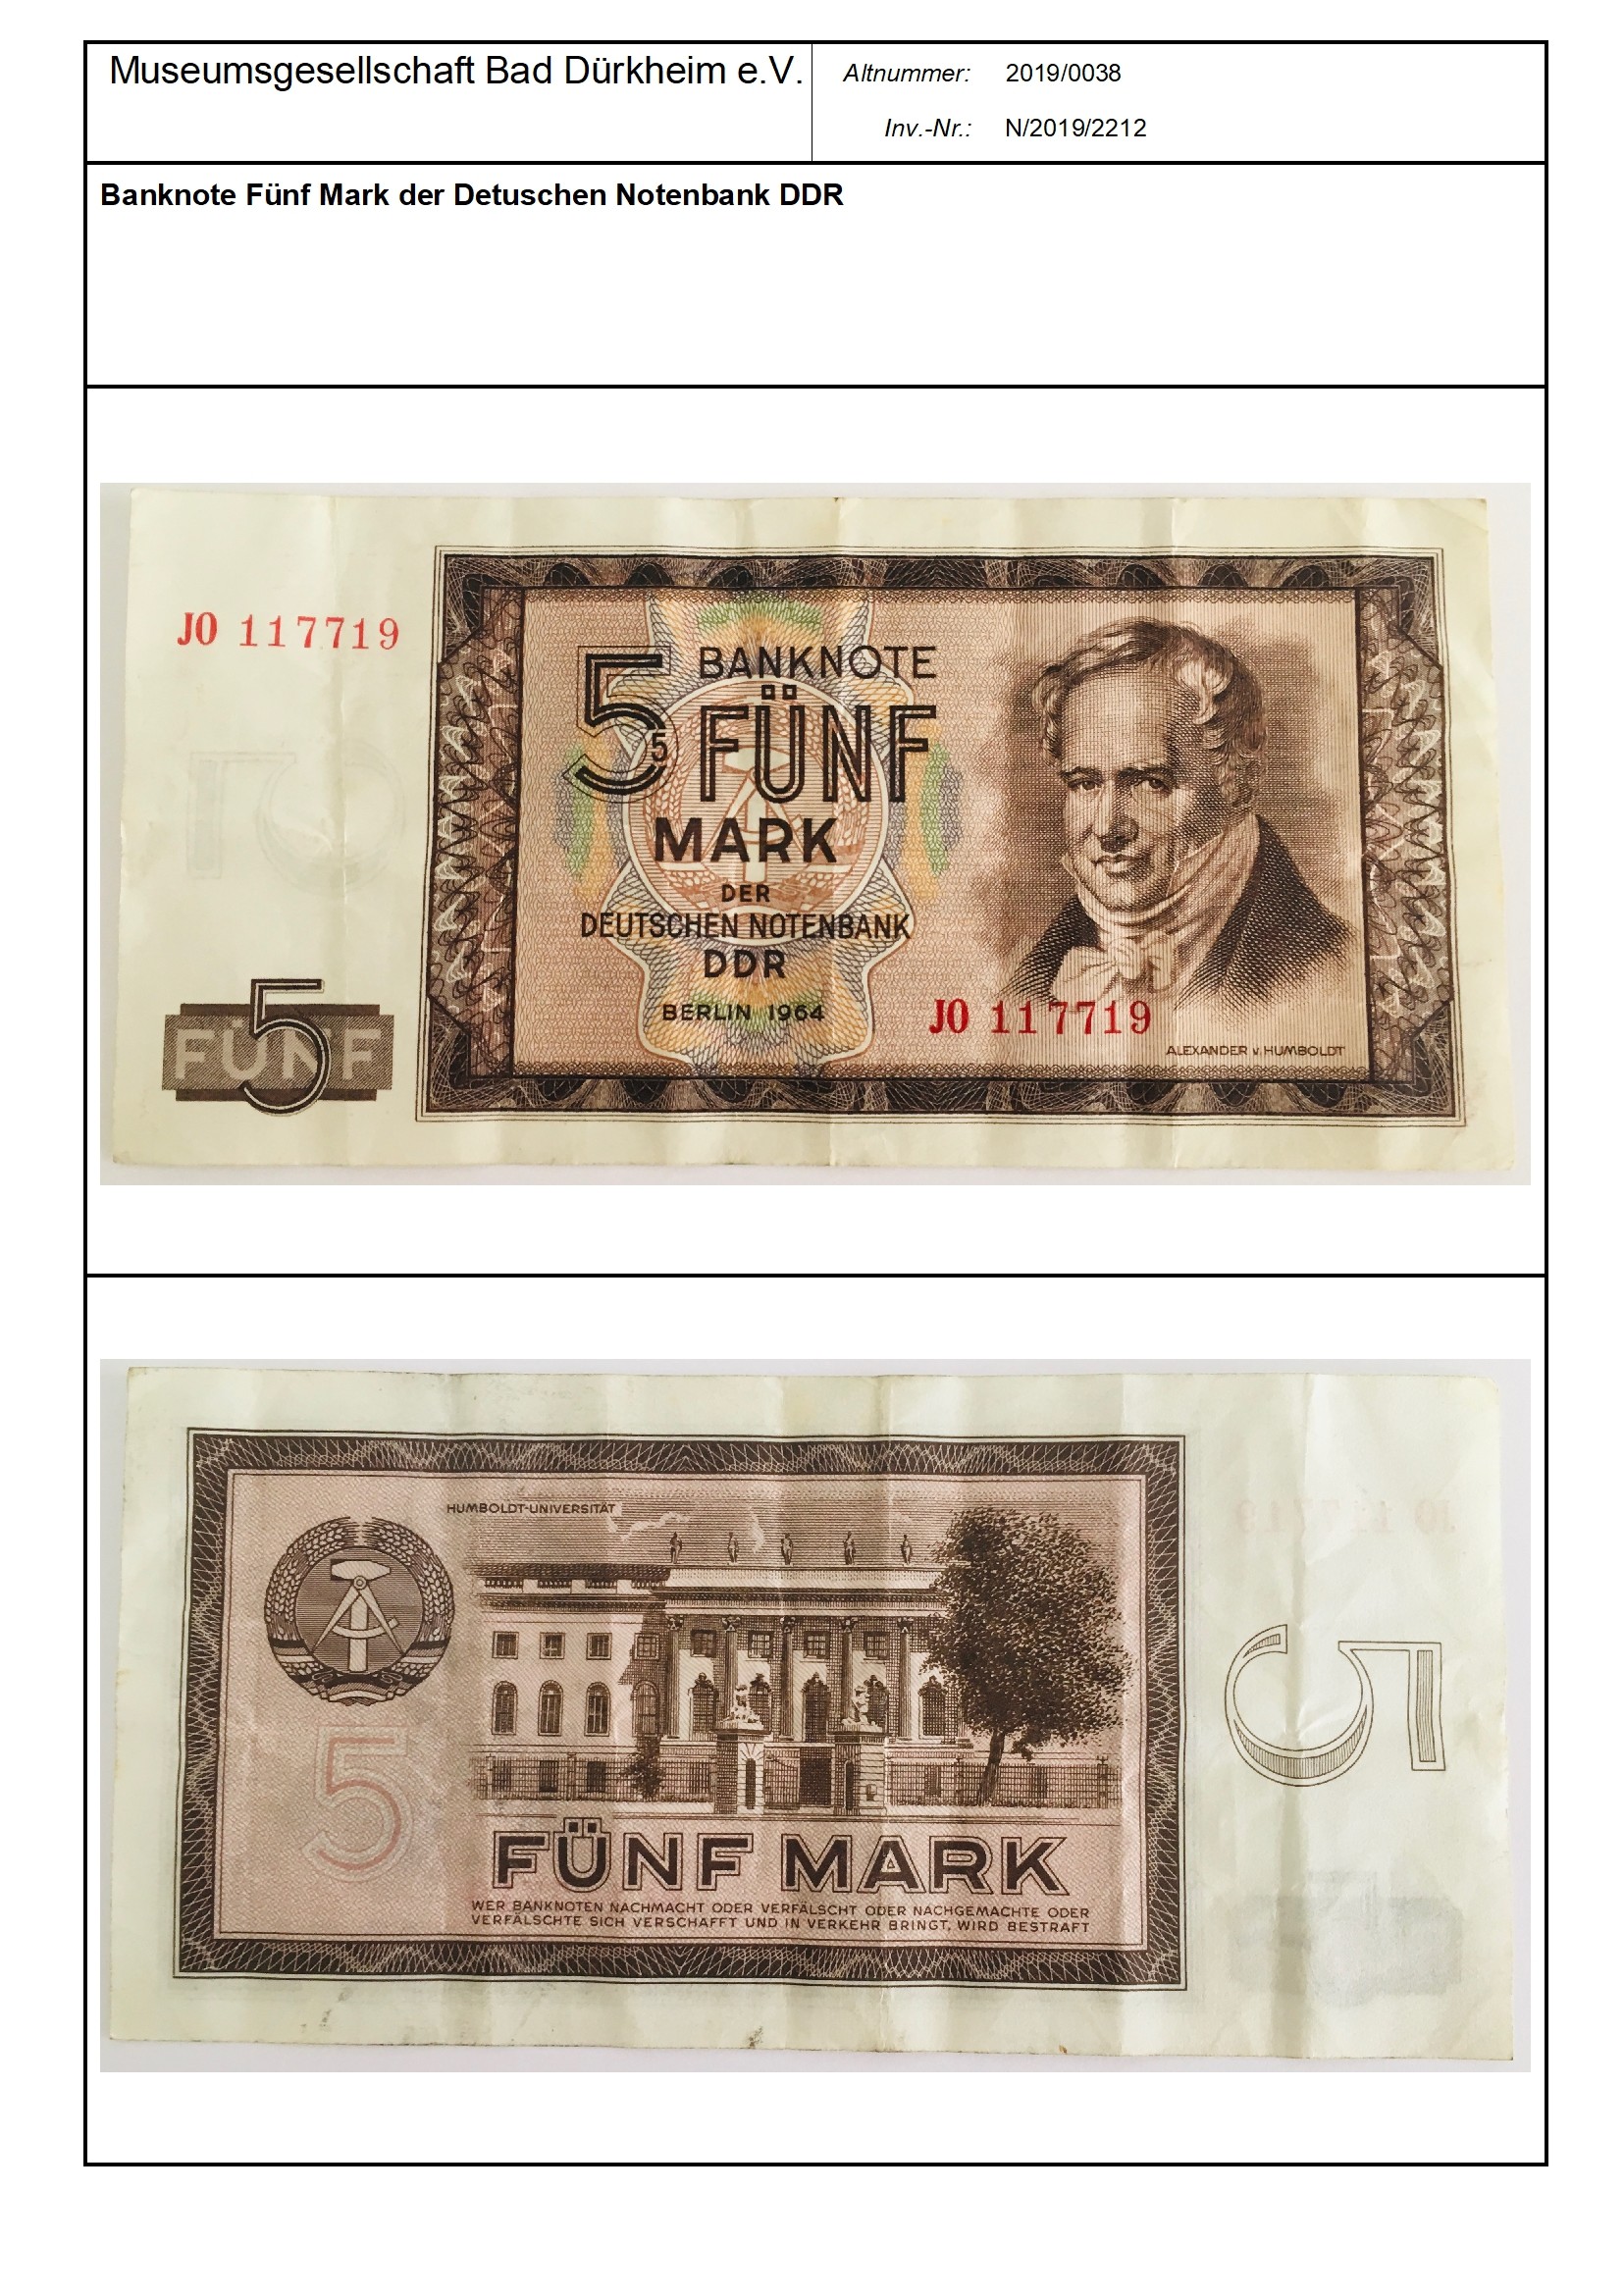 Banknote Fünf Mark der Detuschen Notenbank DDR
Serien-Nummer: JO 117719 (Museumsgesellschaft Bad Dürkheim e.V. CC BY-NC-SA)